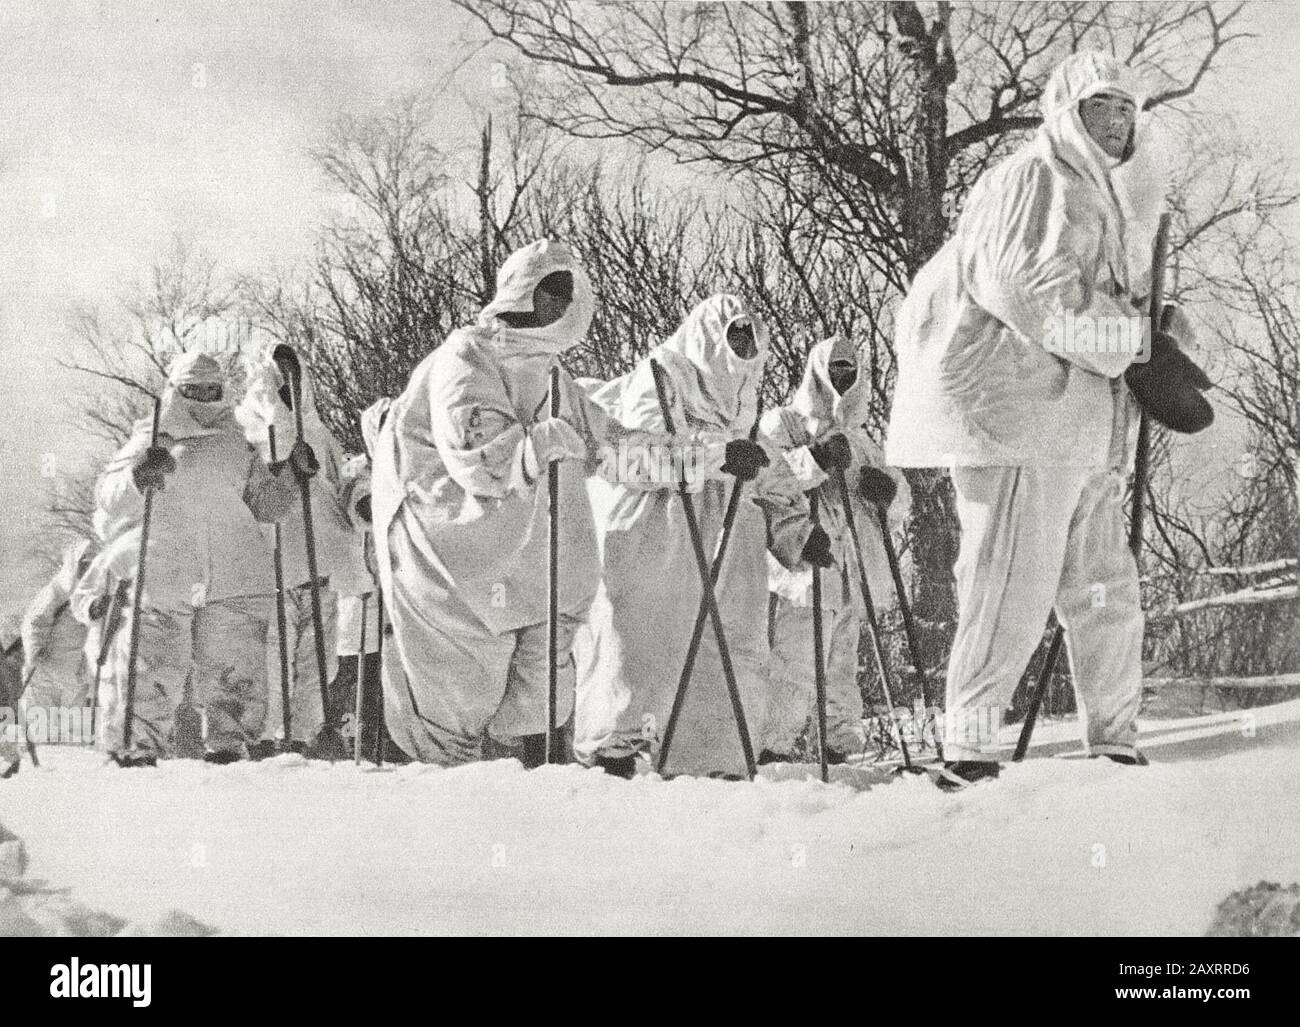 Ejército Rojo en 1930. Del libro de propaganda soviético de 1937. Soldados soviéticos en esquís en abrigos de camuflaje de invierno Foto de stock